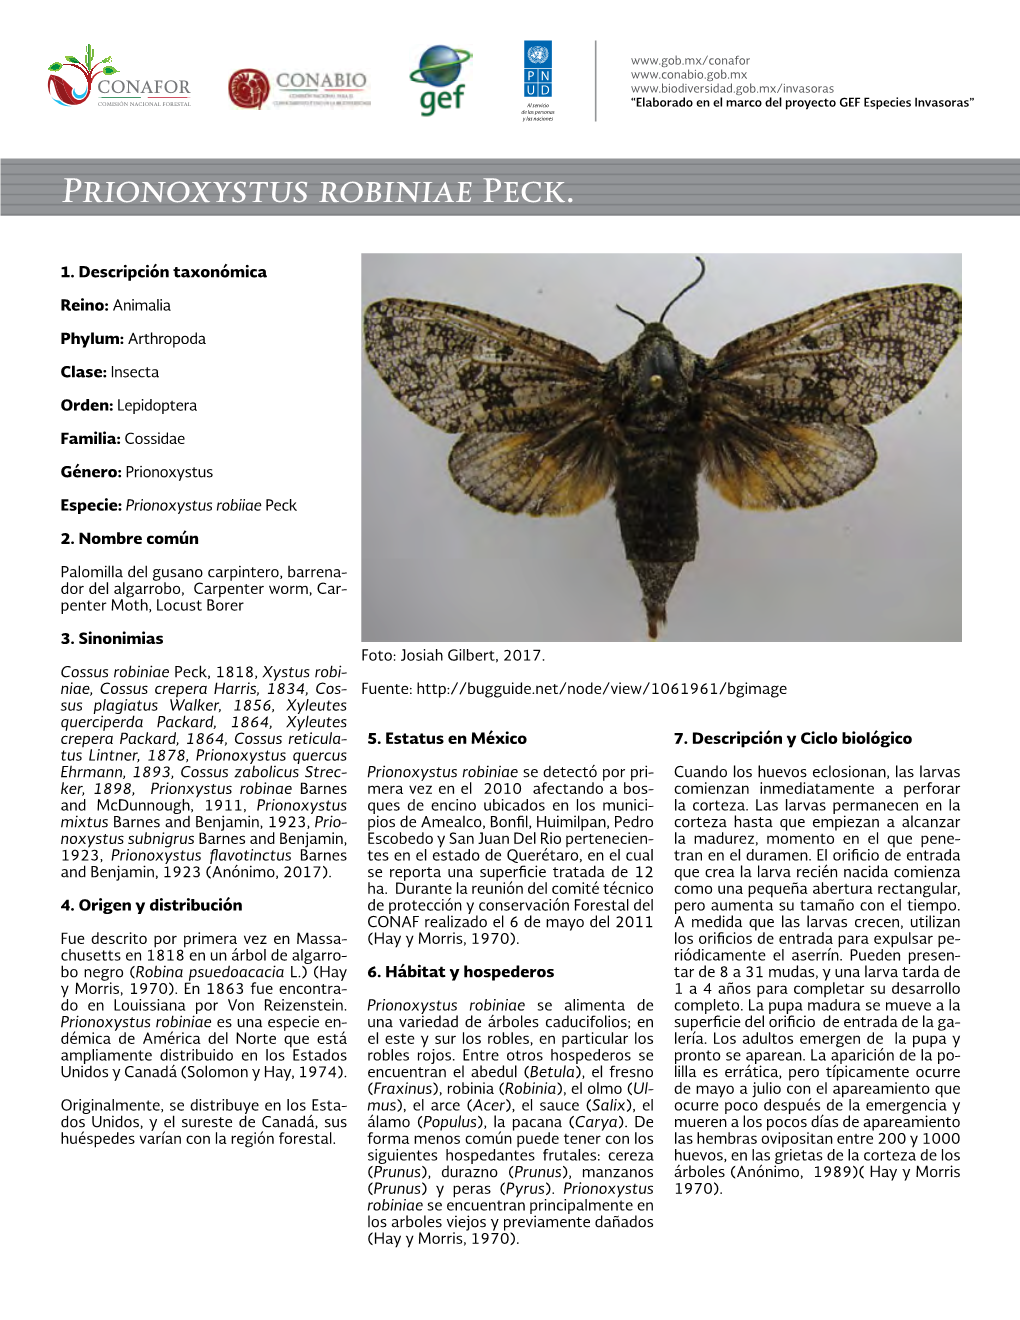 Prionoxystus Robiniae Peck